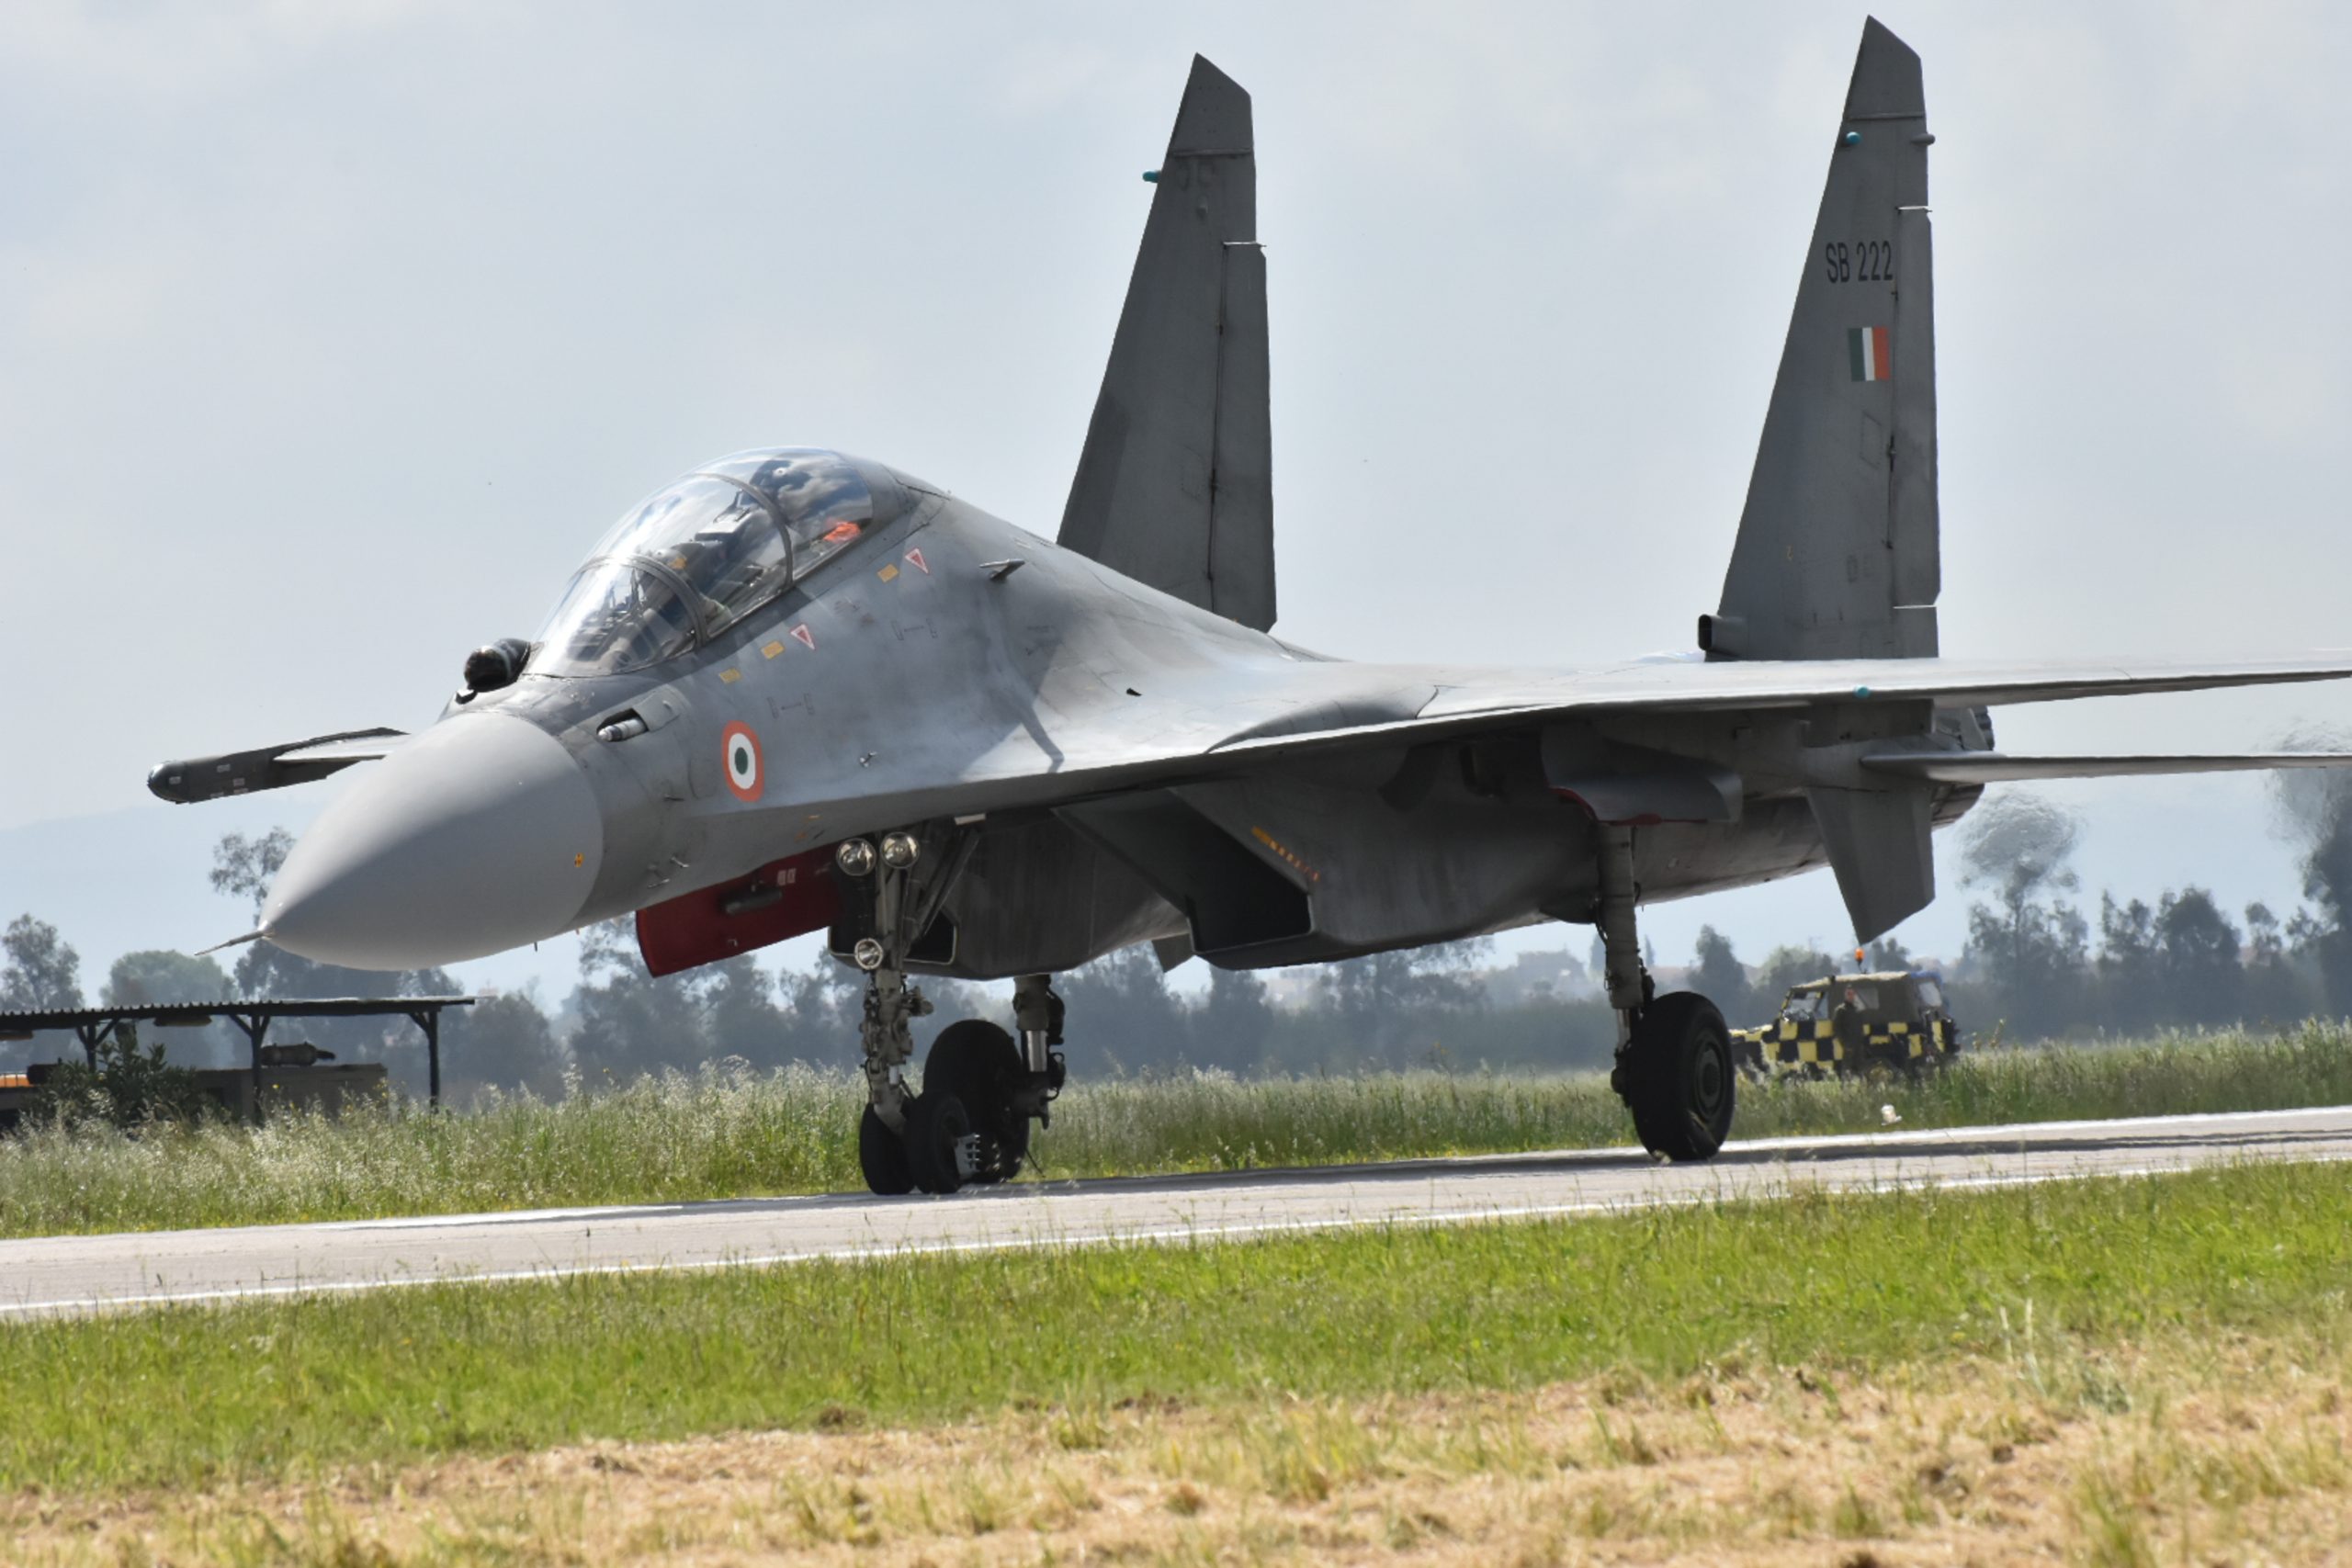 ΗΝΙΟΧΟΣ: Τα Su-30 της Ινδίας που τράβηξαν την προσοχή στην άσκηση